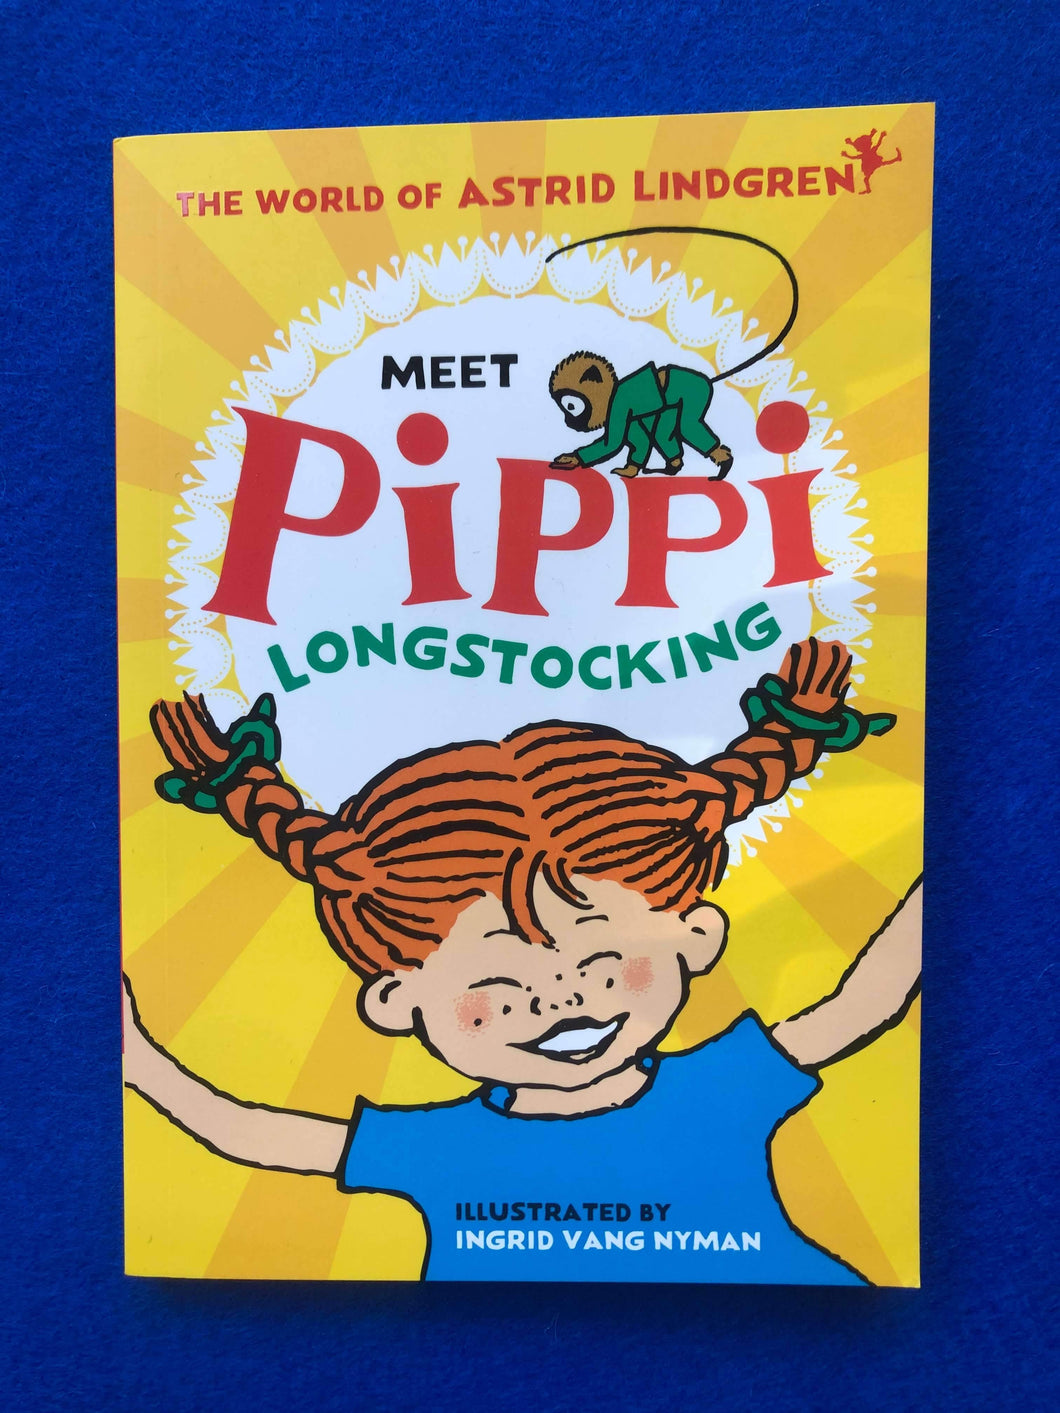 Astrid Lindgren - Meet Pippi Longstocking